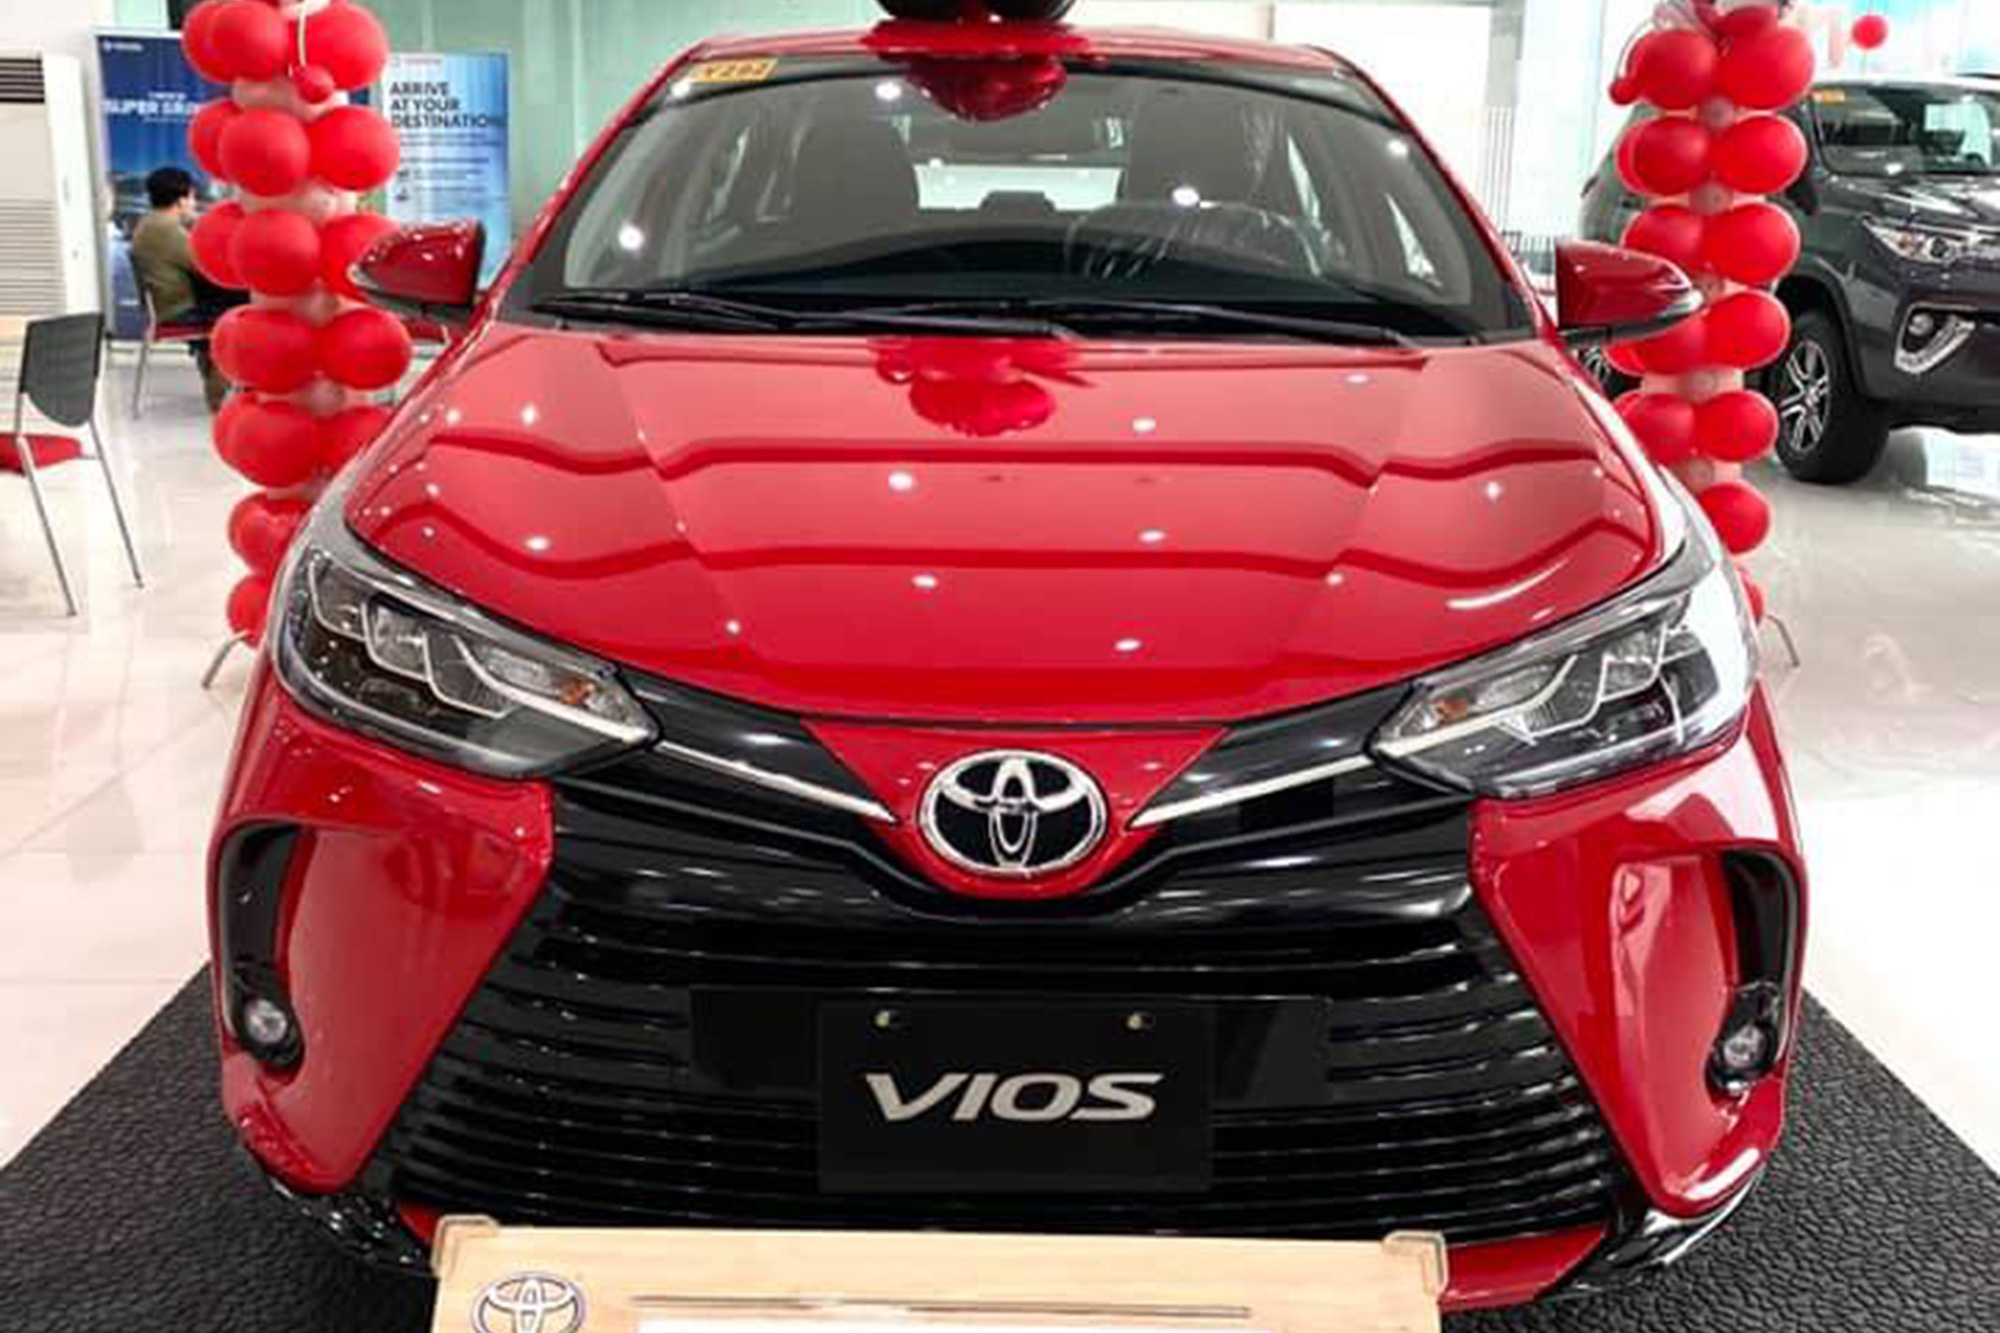 Chưa hết bom tấn, Toyota Việt Nam sắp tổng lực ra mắt Hilux, Fortuner, Innova và cả Vios mới, quyết sắp xếp lại thị trường